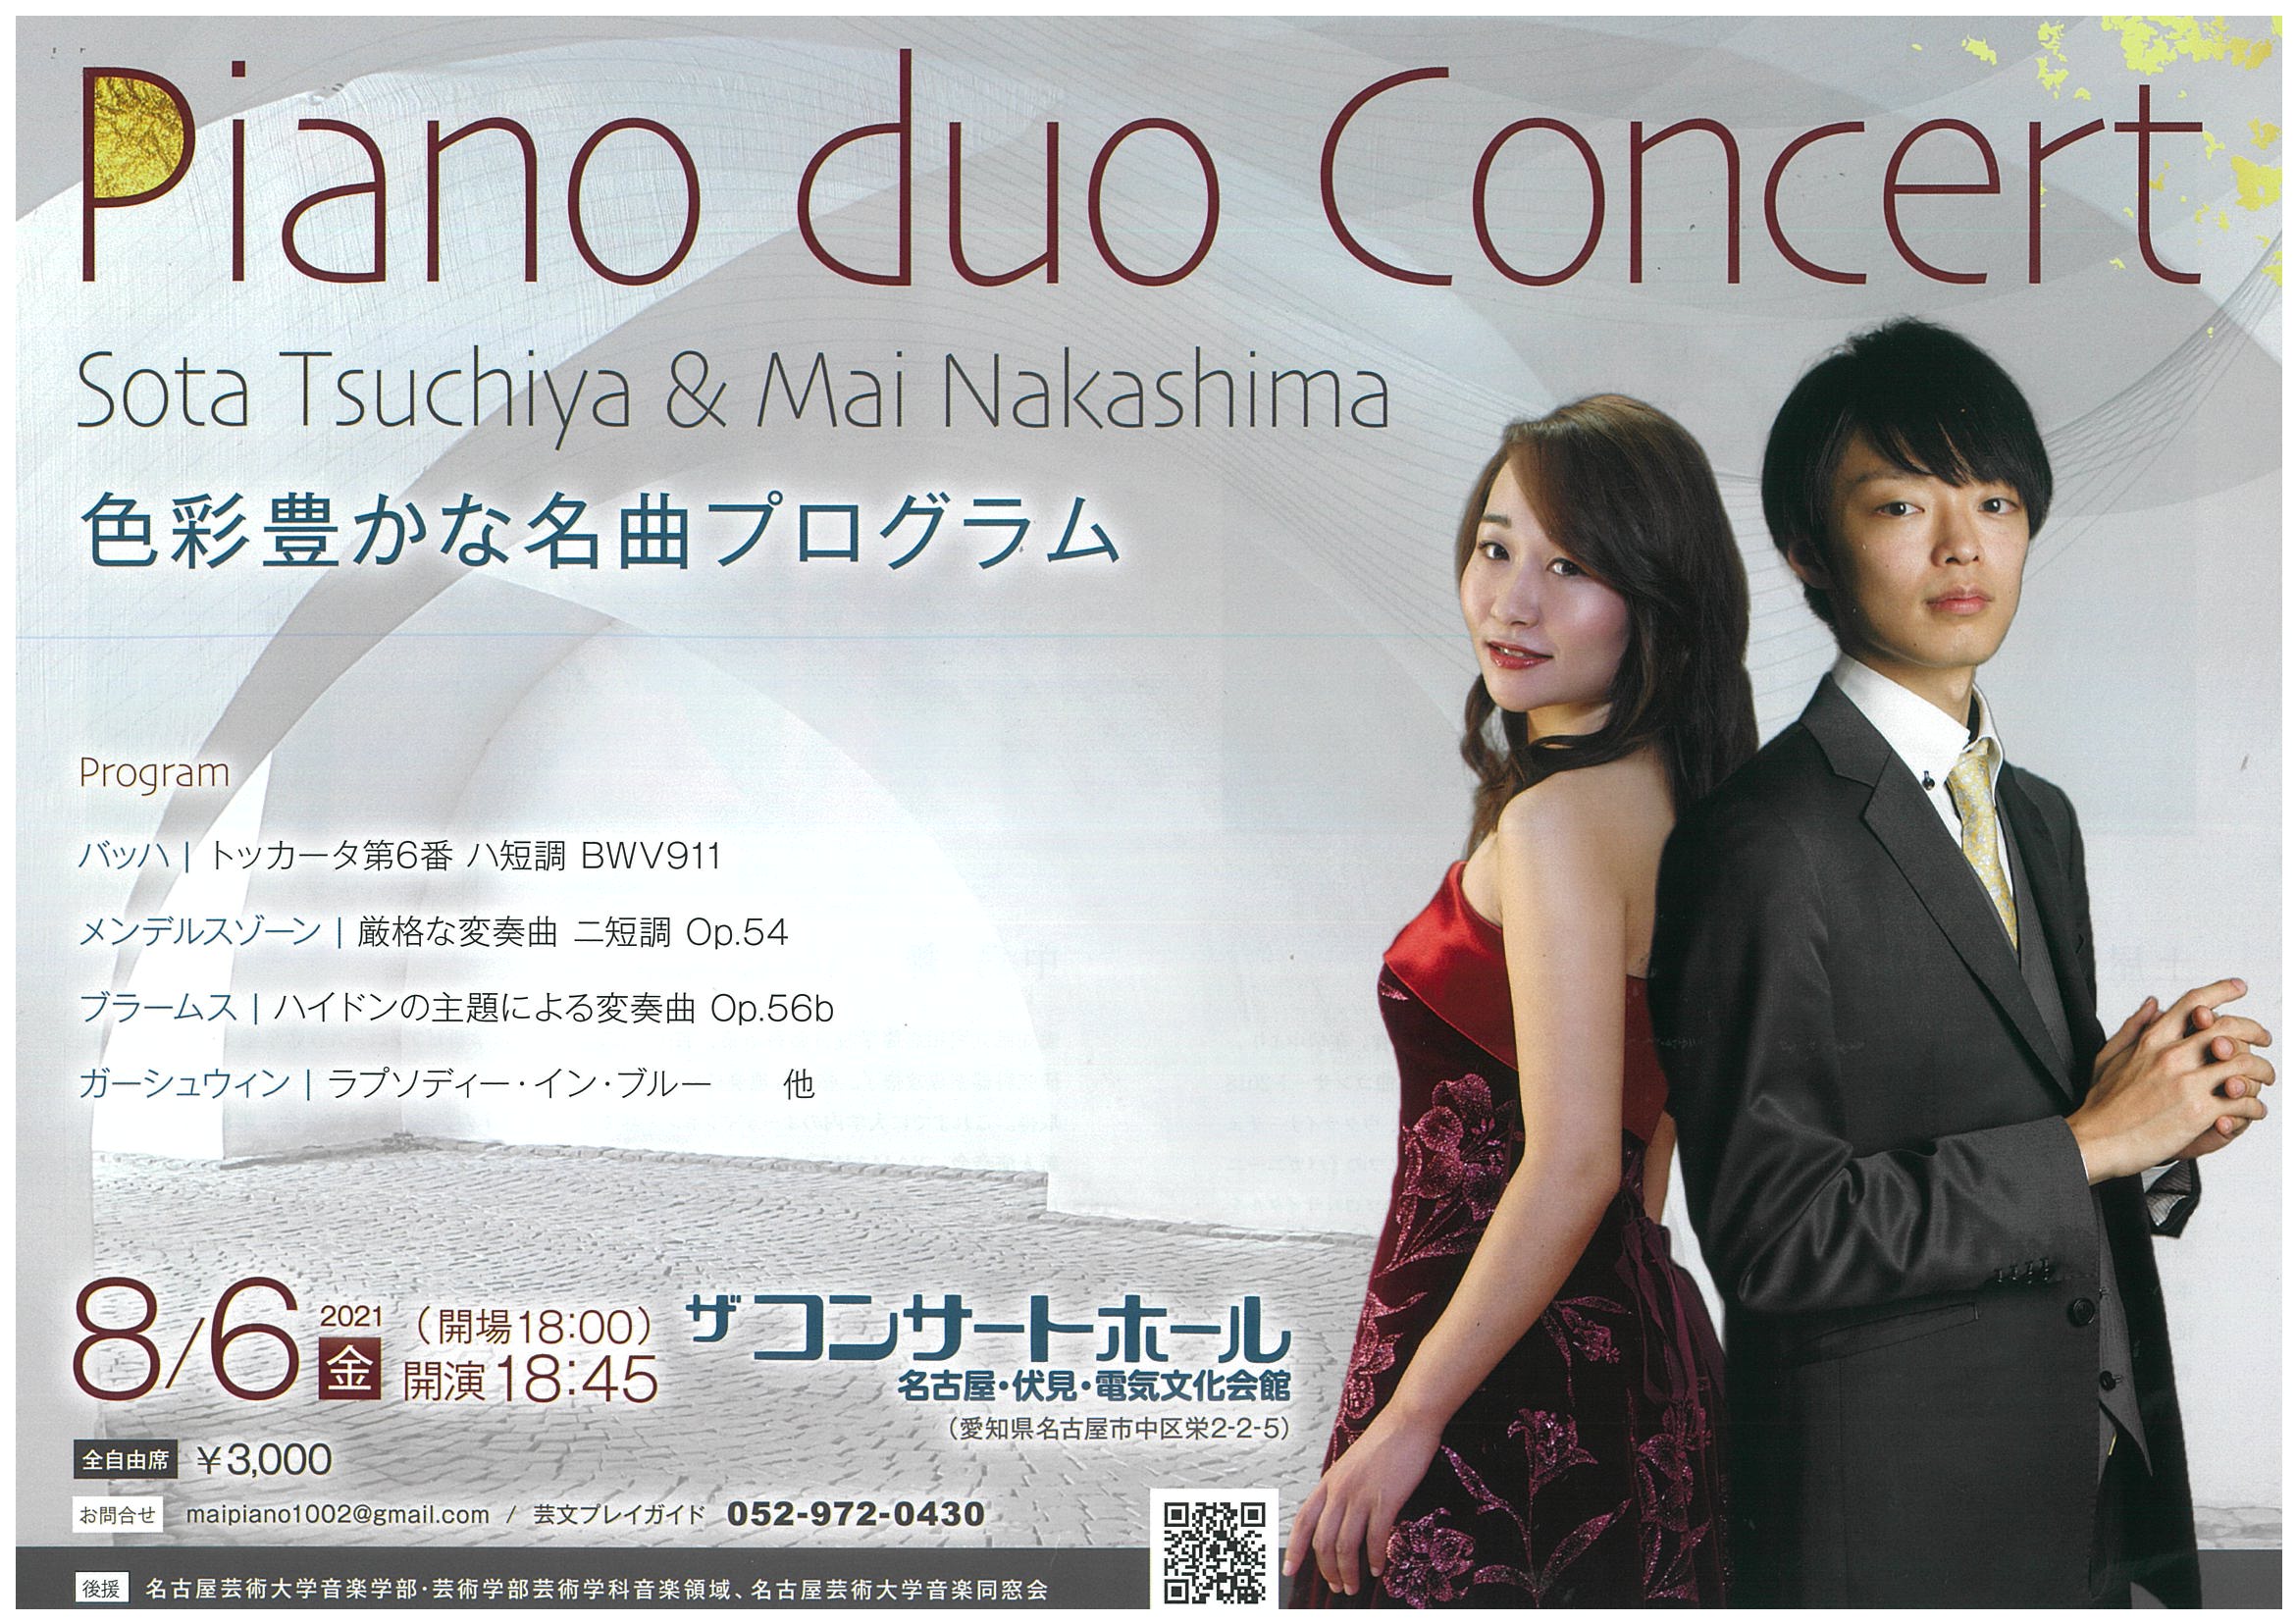 土屋宗太 中島 舞 ピアノデュオコンサート 色彩豊かな名曲プログラム 電気文化会館